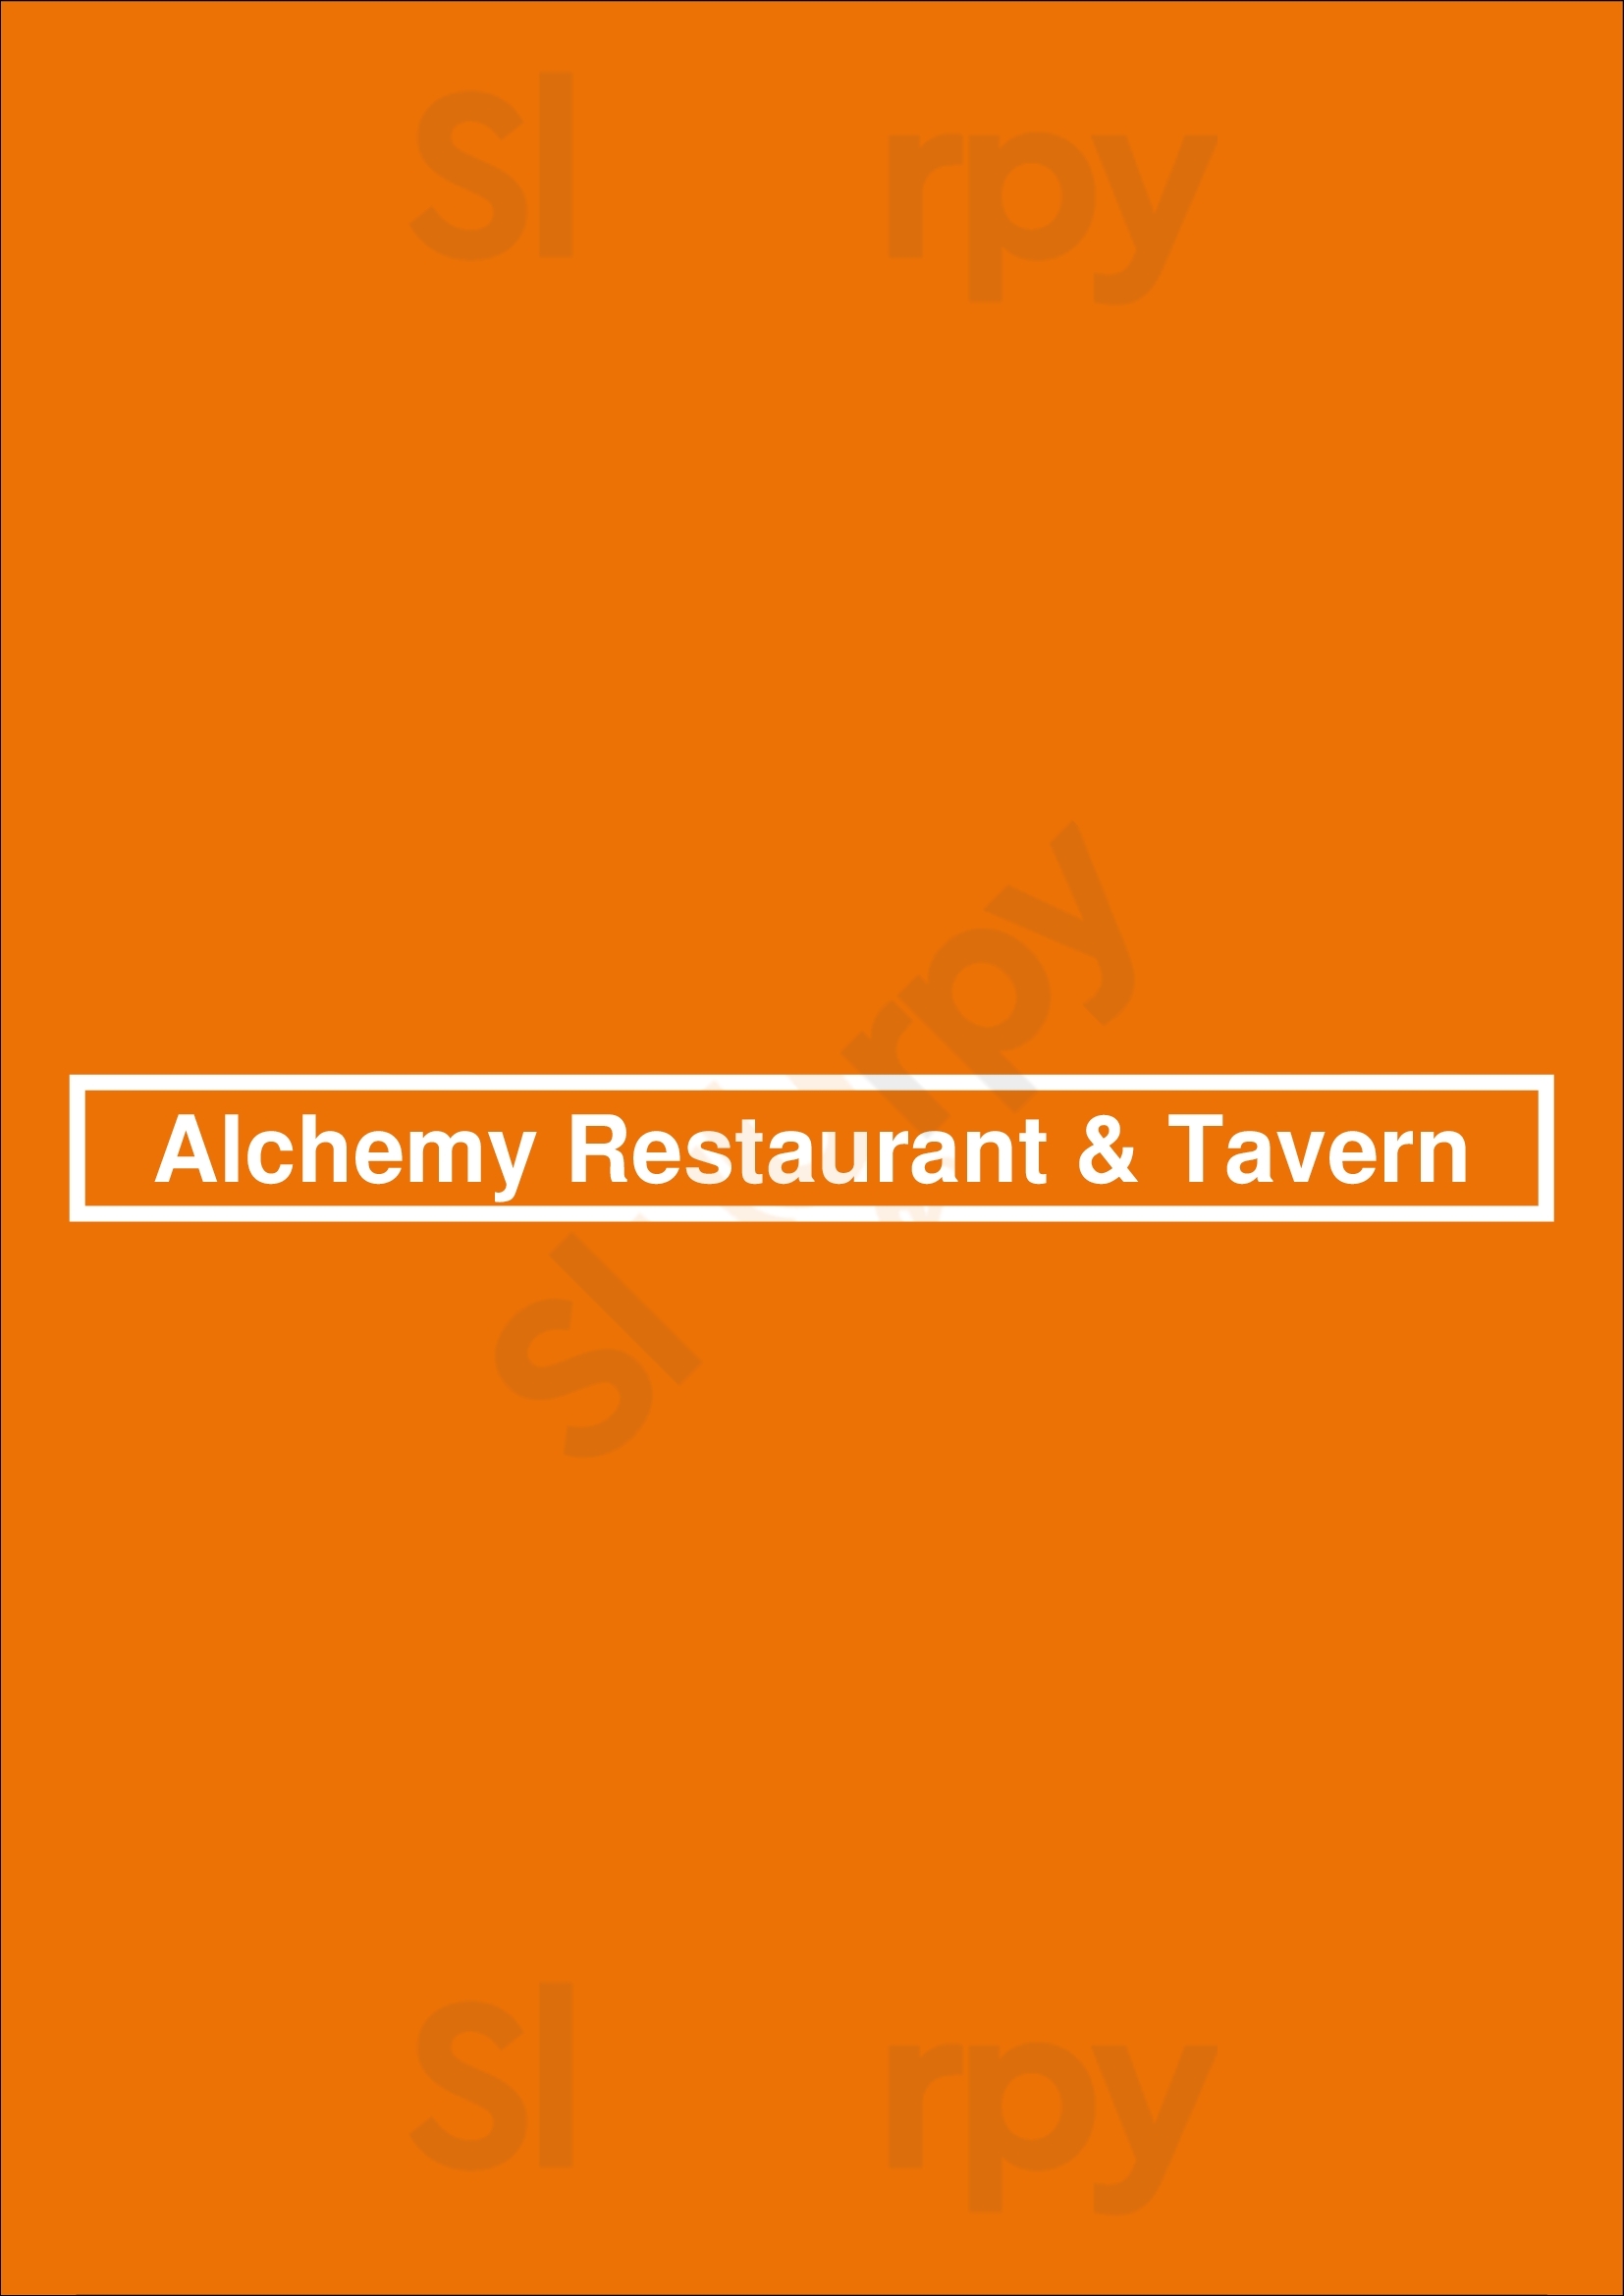 Alchemy Restaurant & Tavern Brooklyn Menu - 1